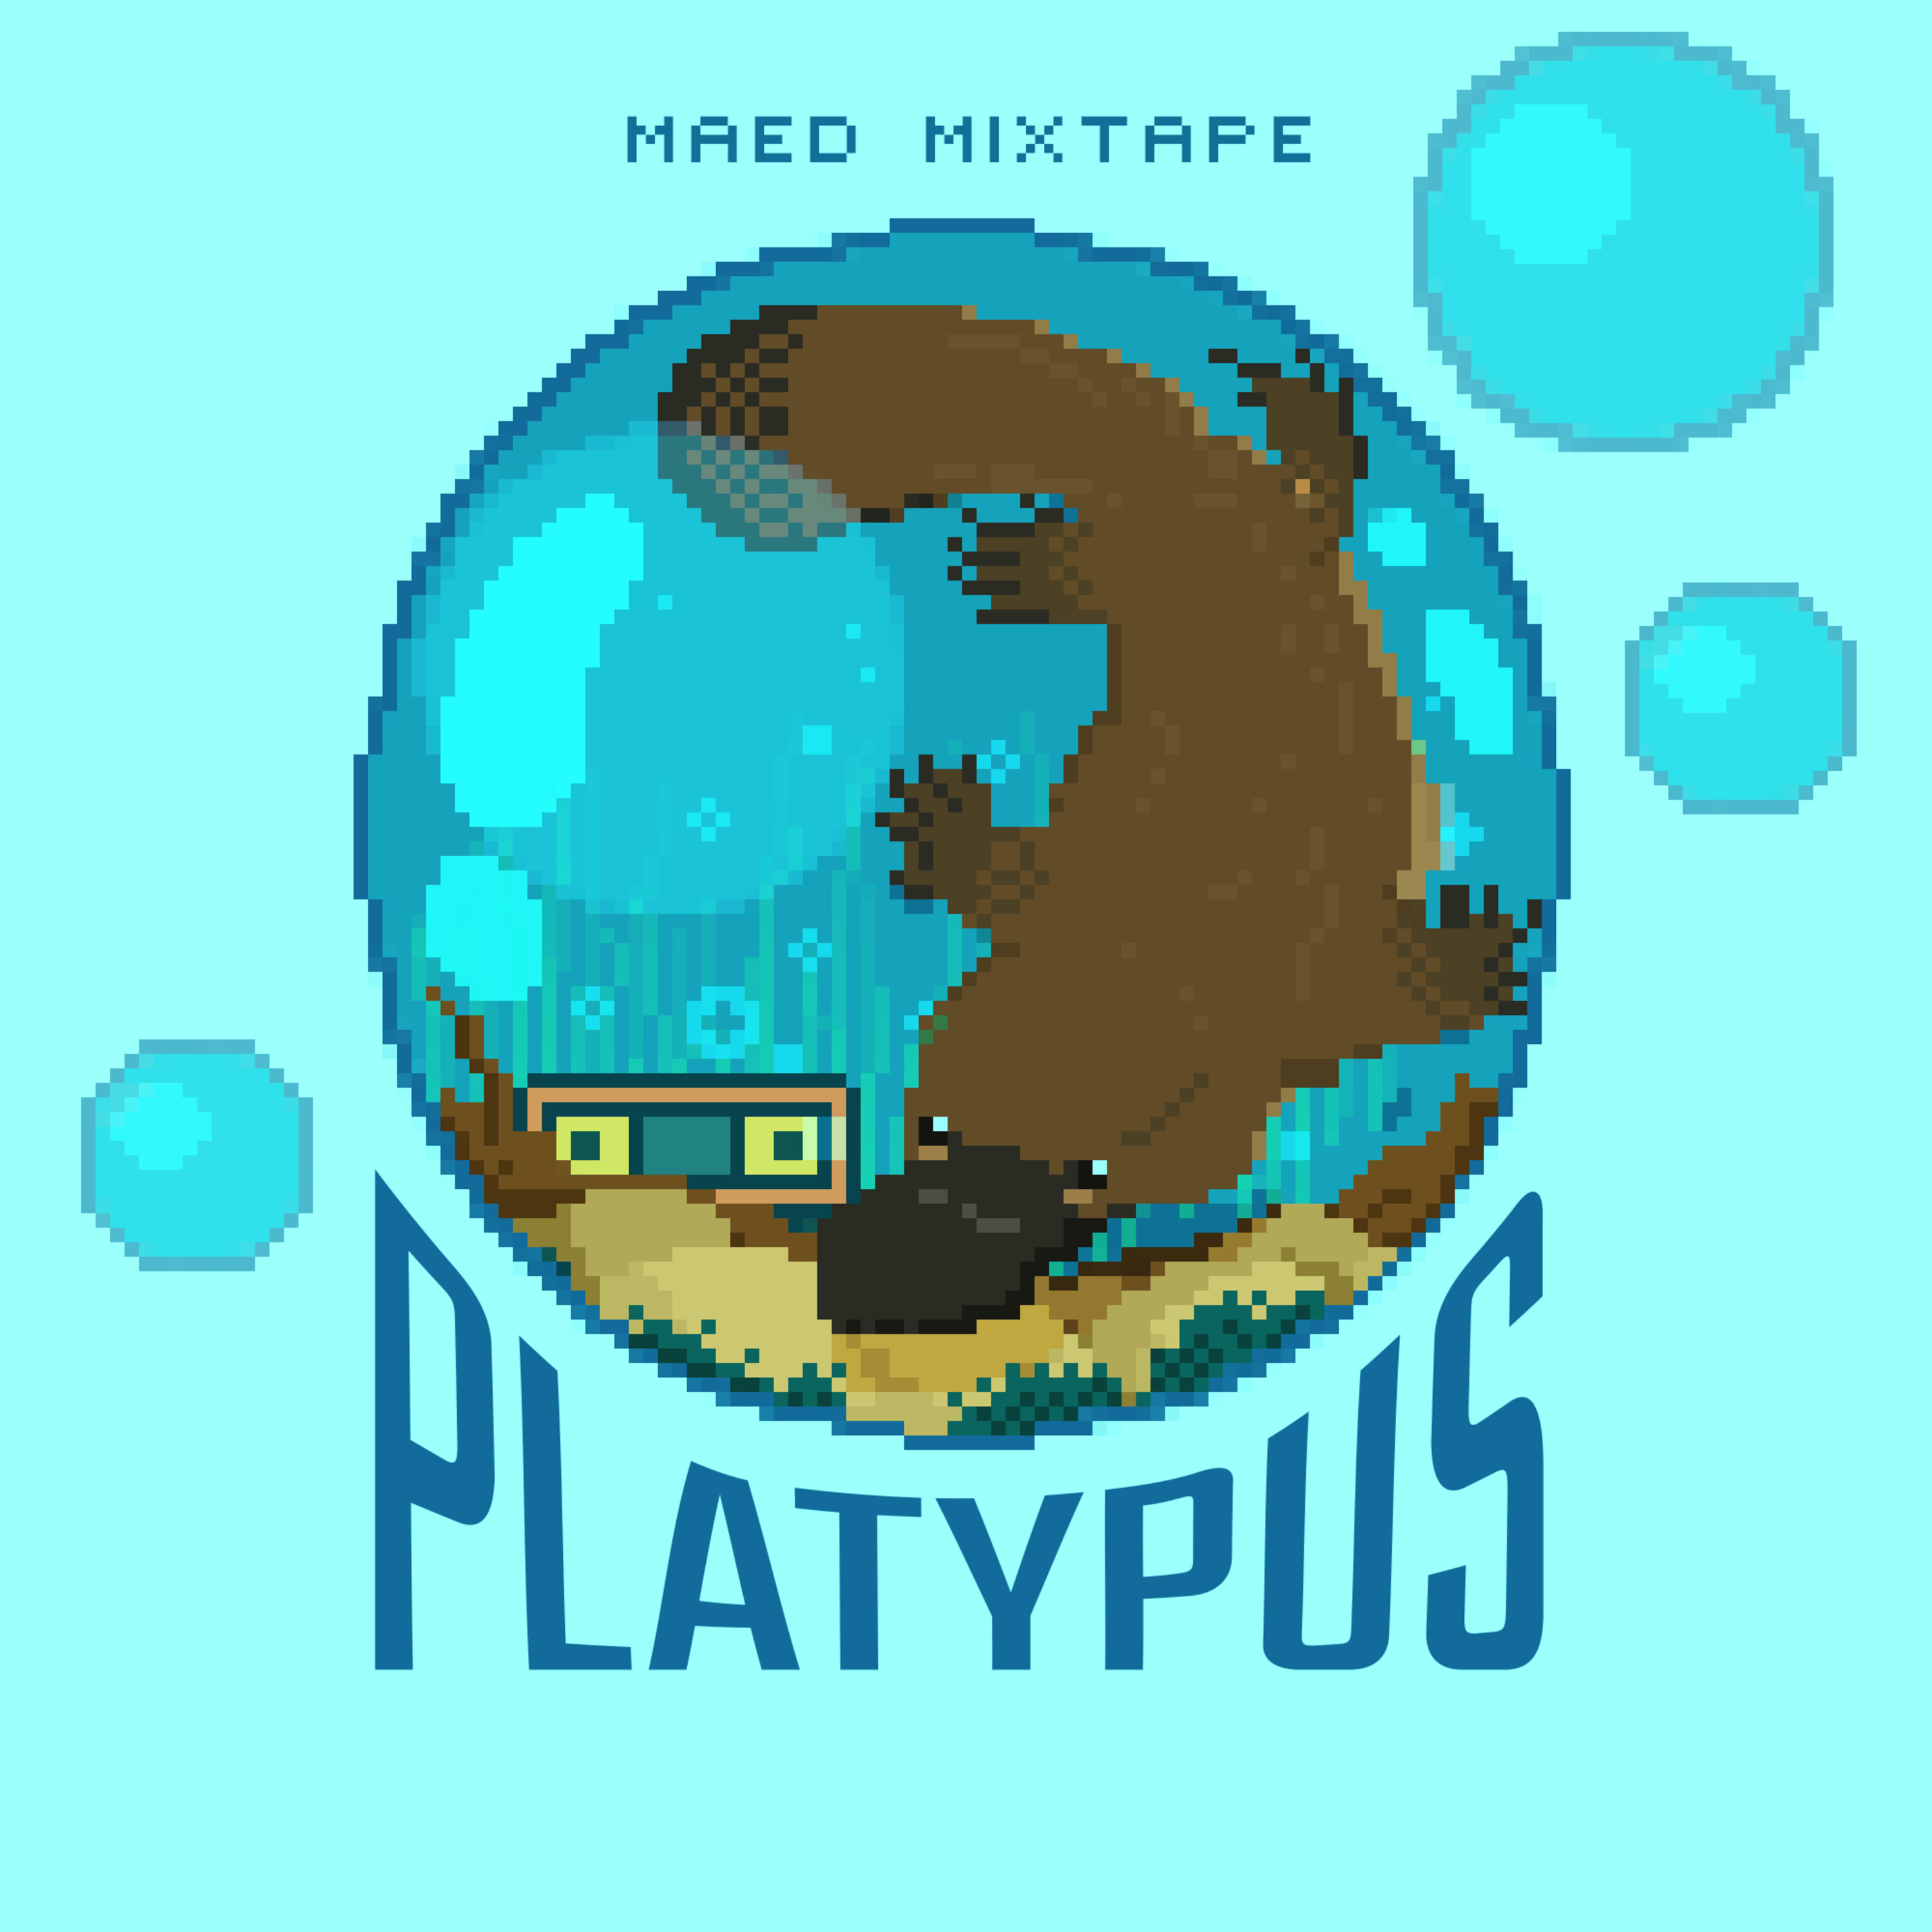 Maed Mixtape - Platypus